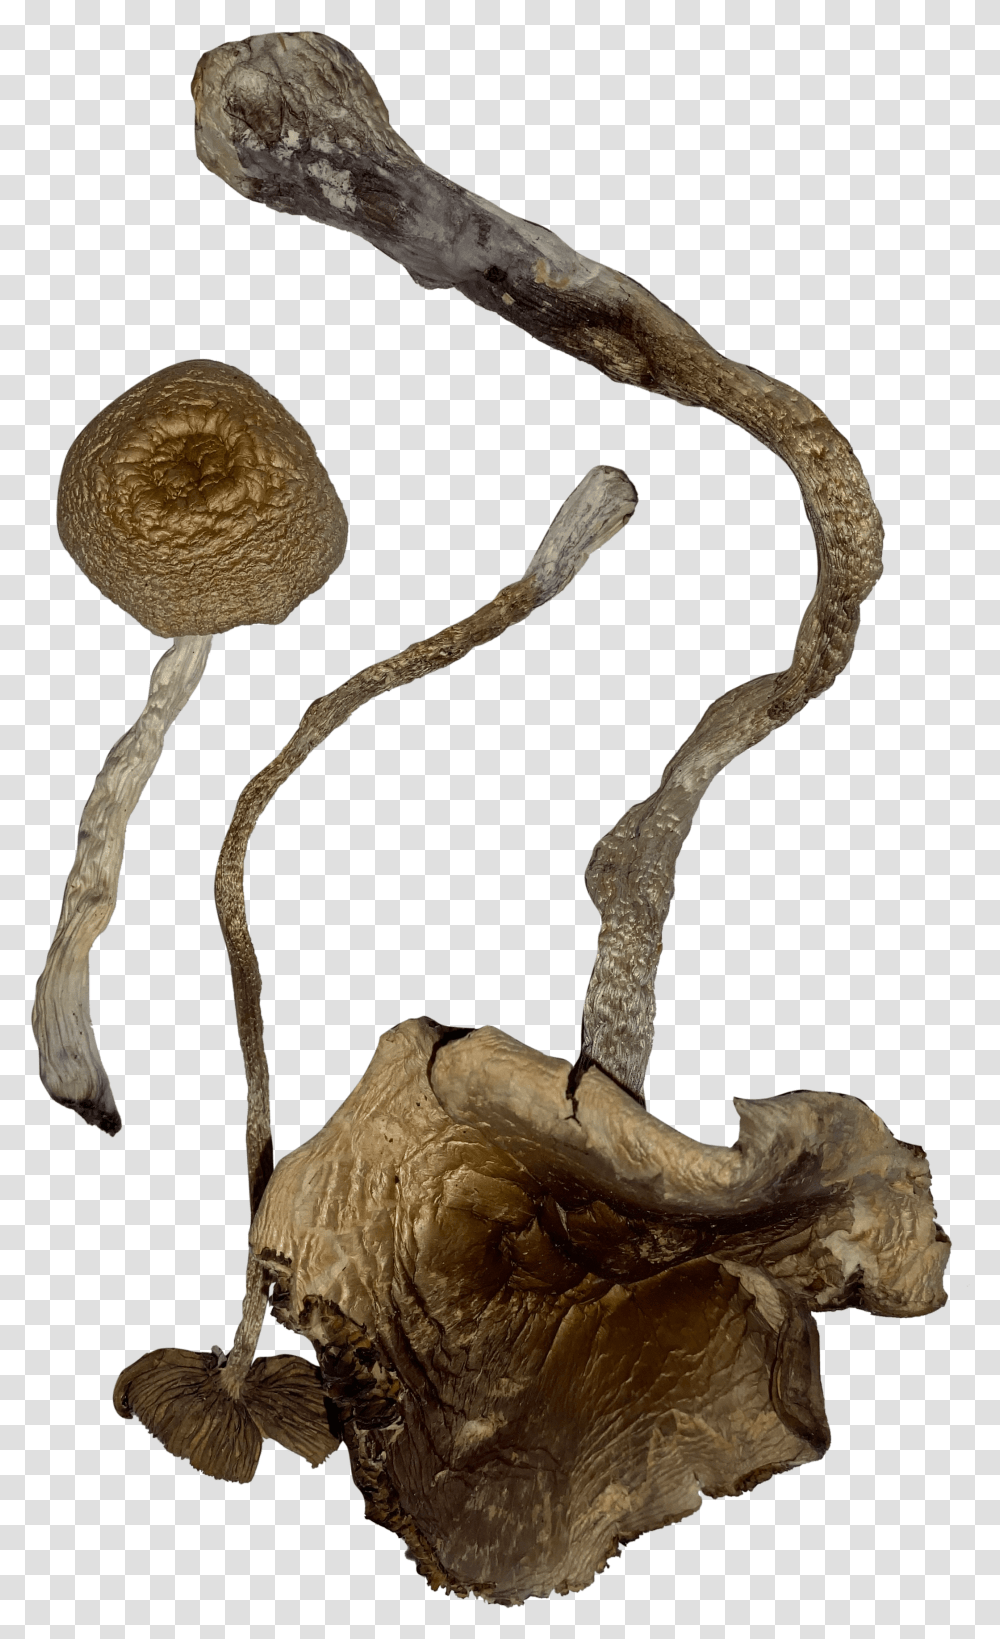 Transkei Magic Mushrooms Illustration, Agaric, Plant, Fungus, Amanita Transparent Png